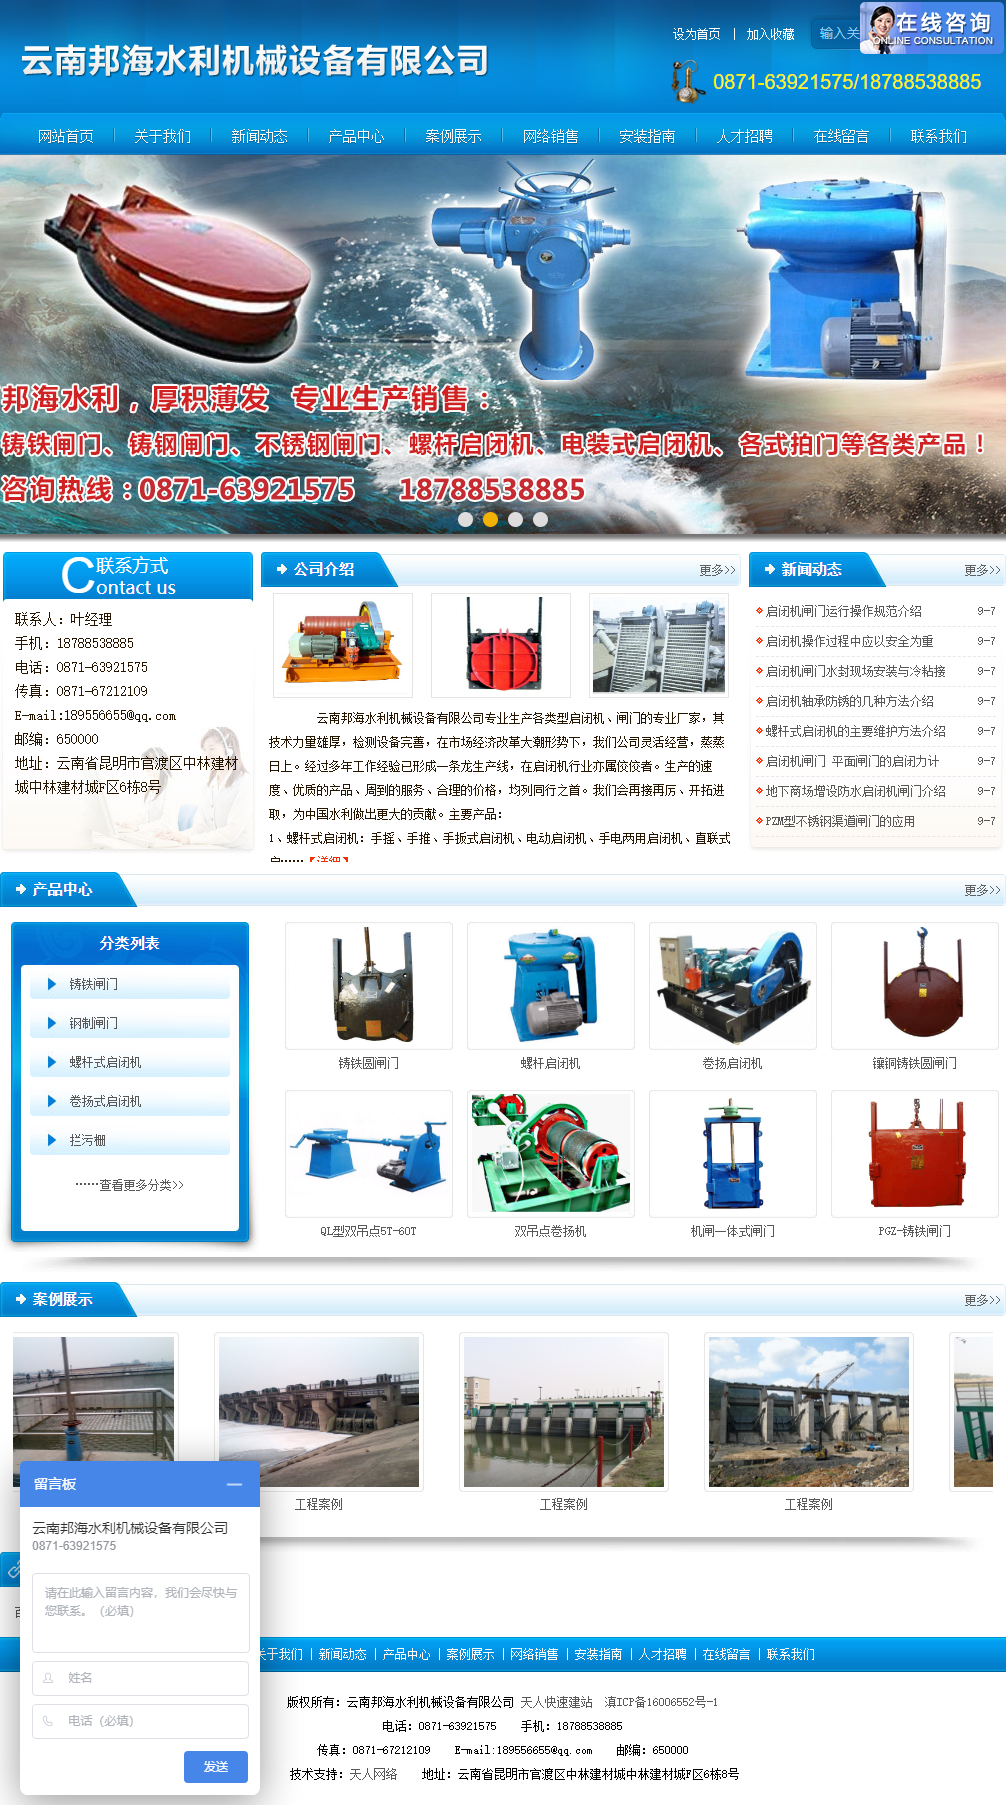 云南邦海水利机械设备有限公司网站案例